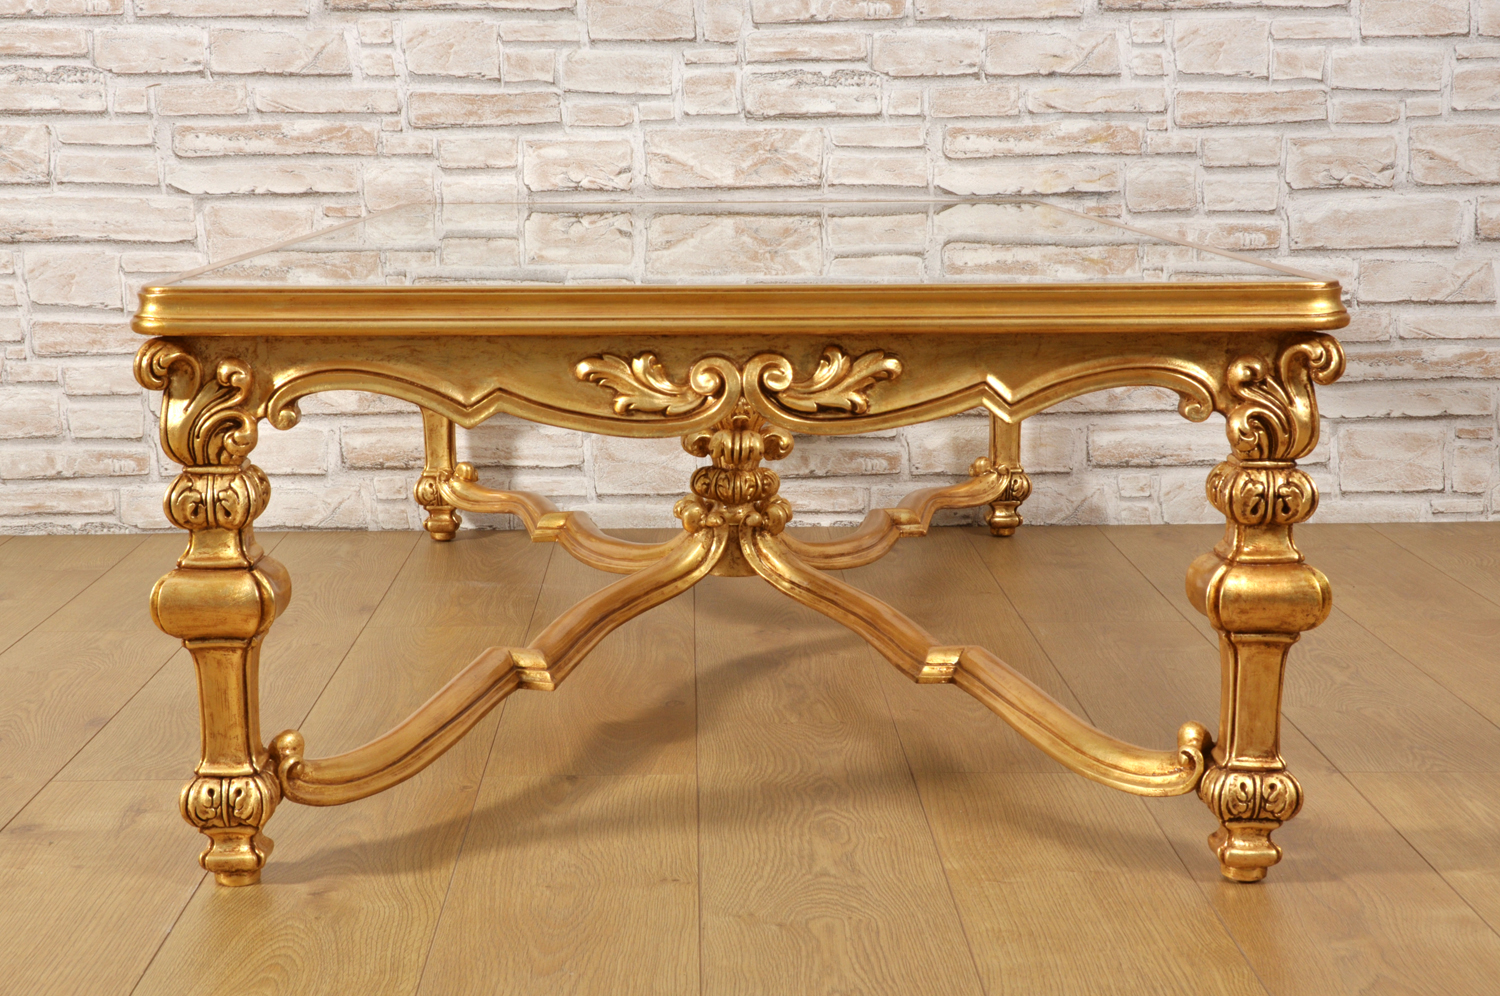 Art.713 Tavolino barocco da salotto - Art Prestige – Luxury Furniture